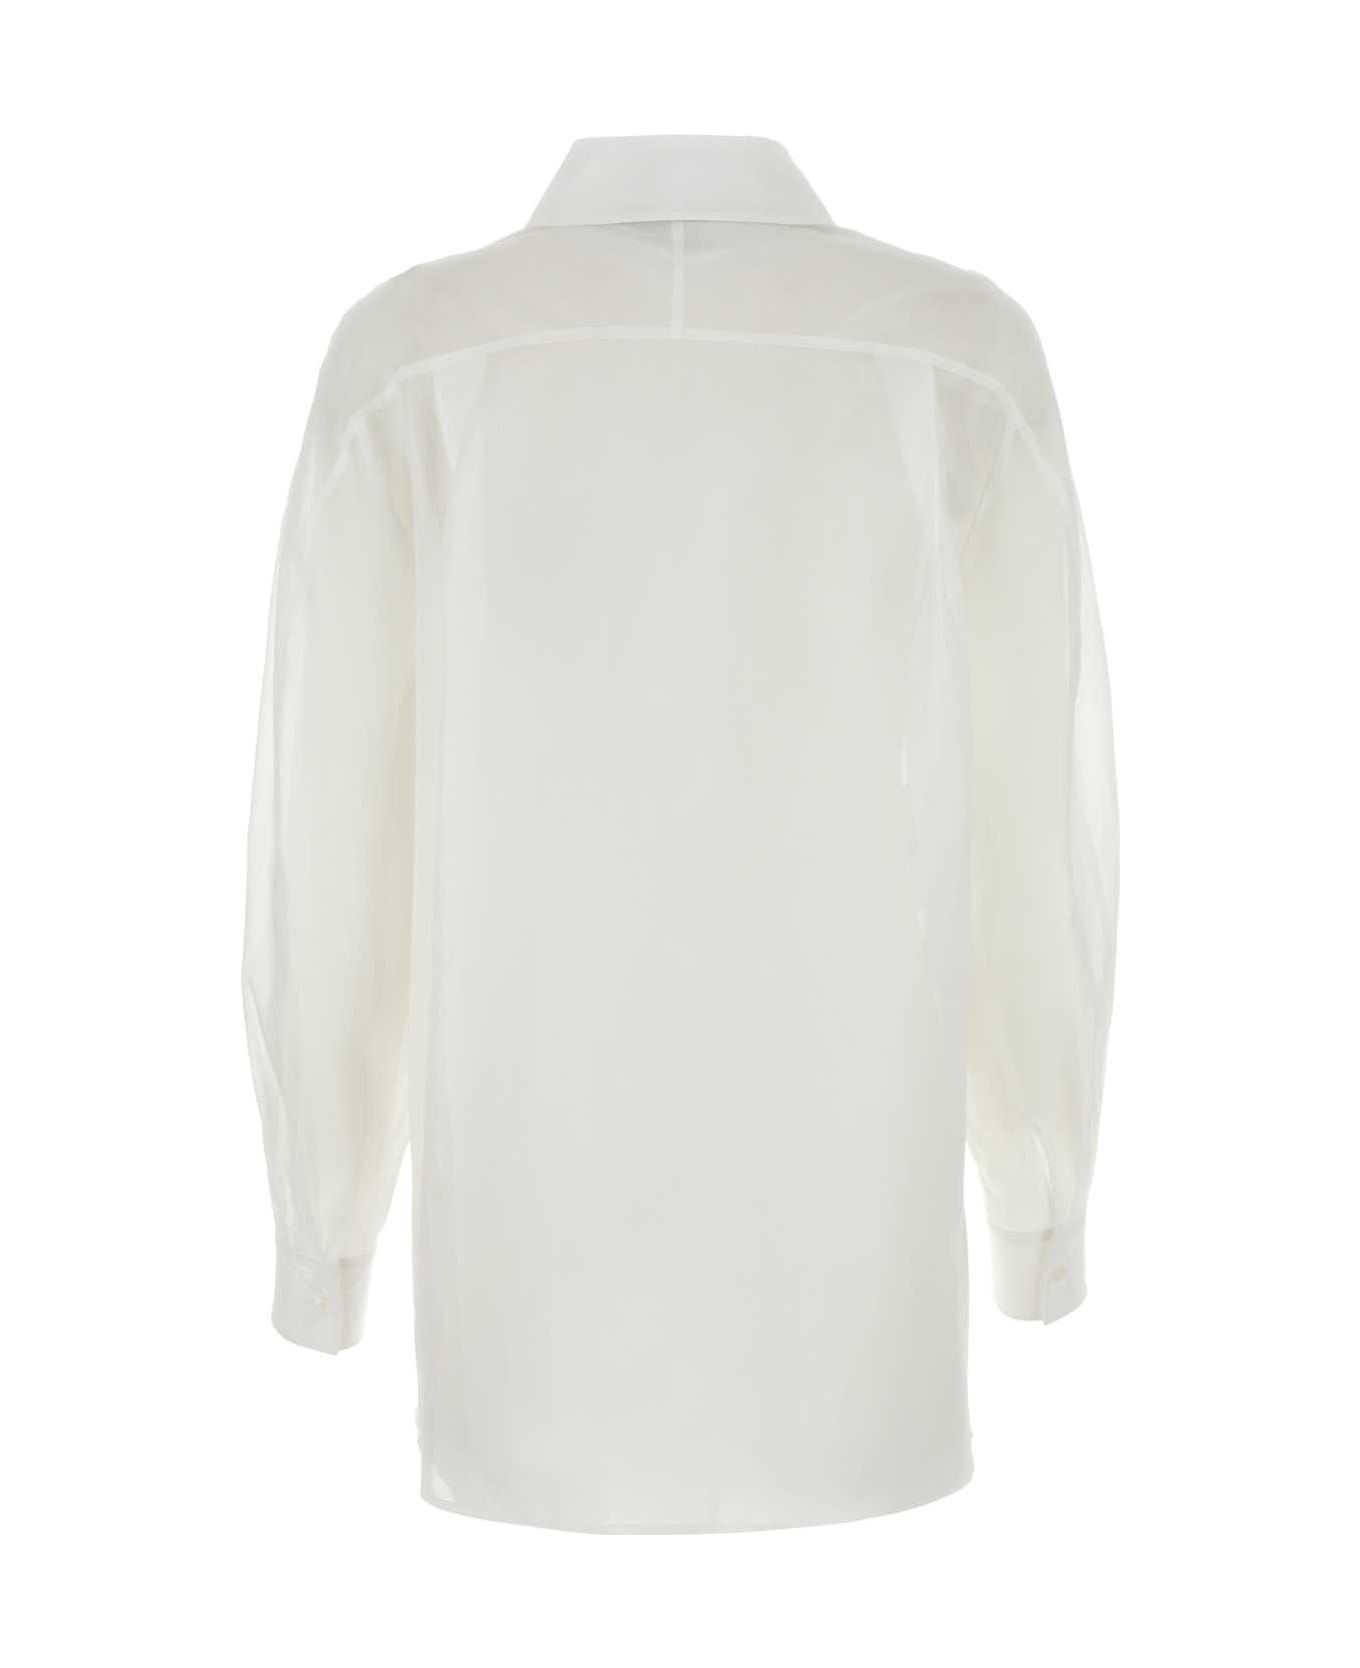 Alberta Ferretti White Cotton Shirt - BIANCO シャツ